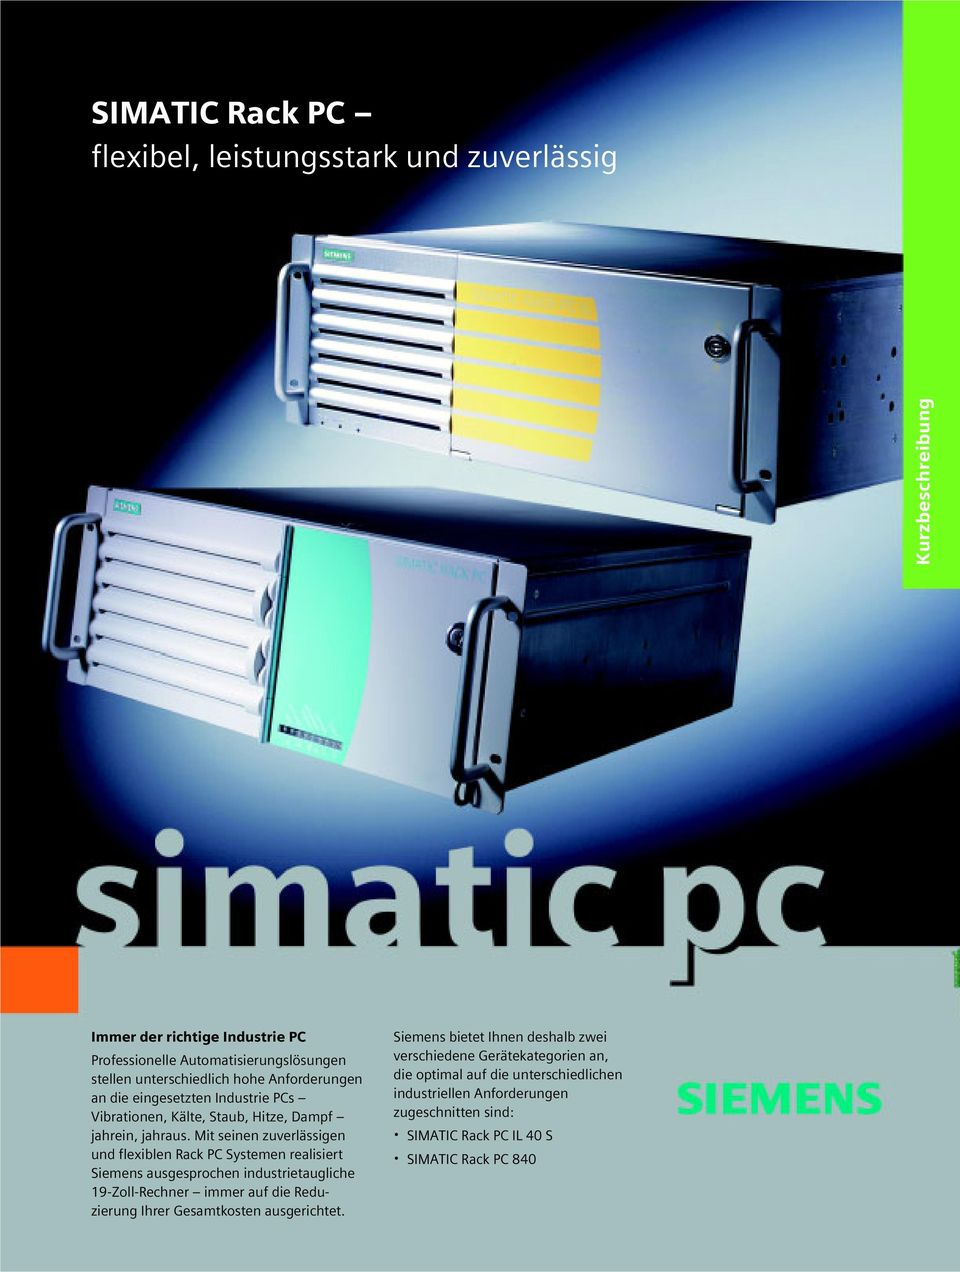 Mit seinen zuverlässigen und flexiblen Rack PC Systemen realisiert Siemens ausgesprochen industrietaugliche 19-Zoll-Rechner immer auf die Reduzierung Ihrer